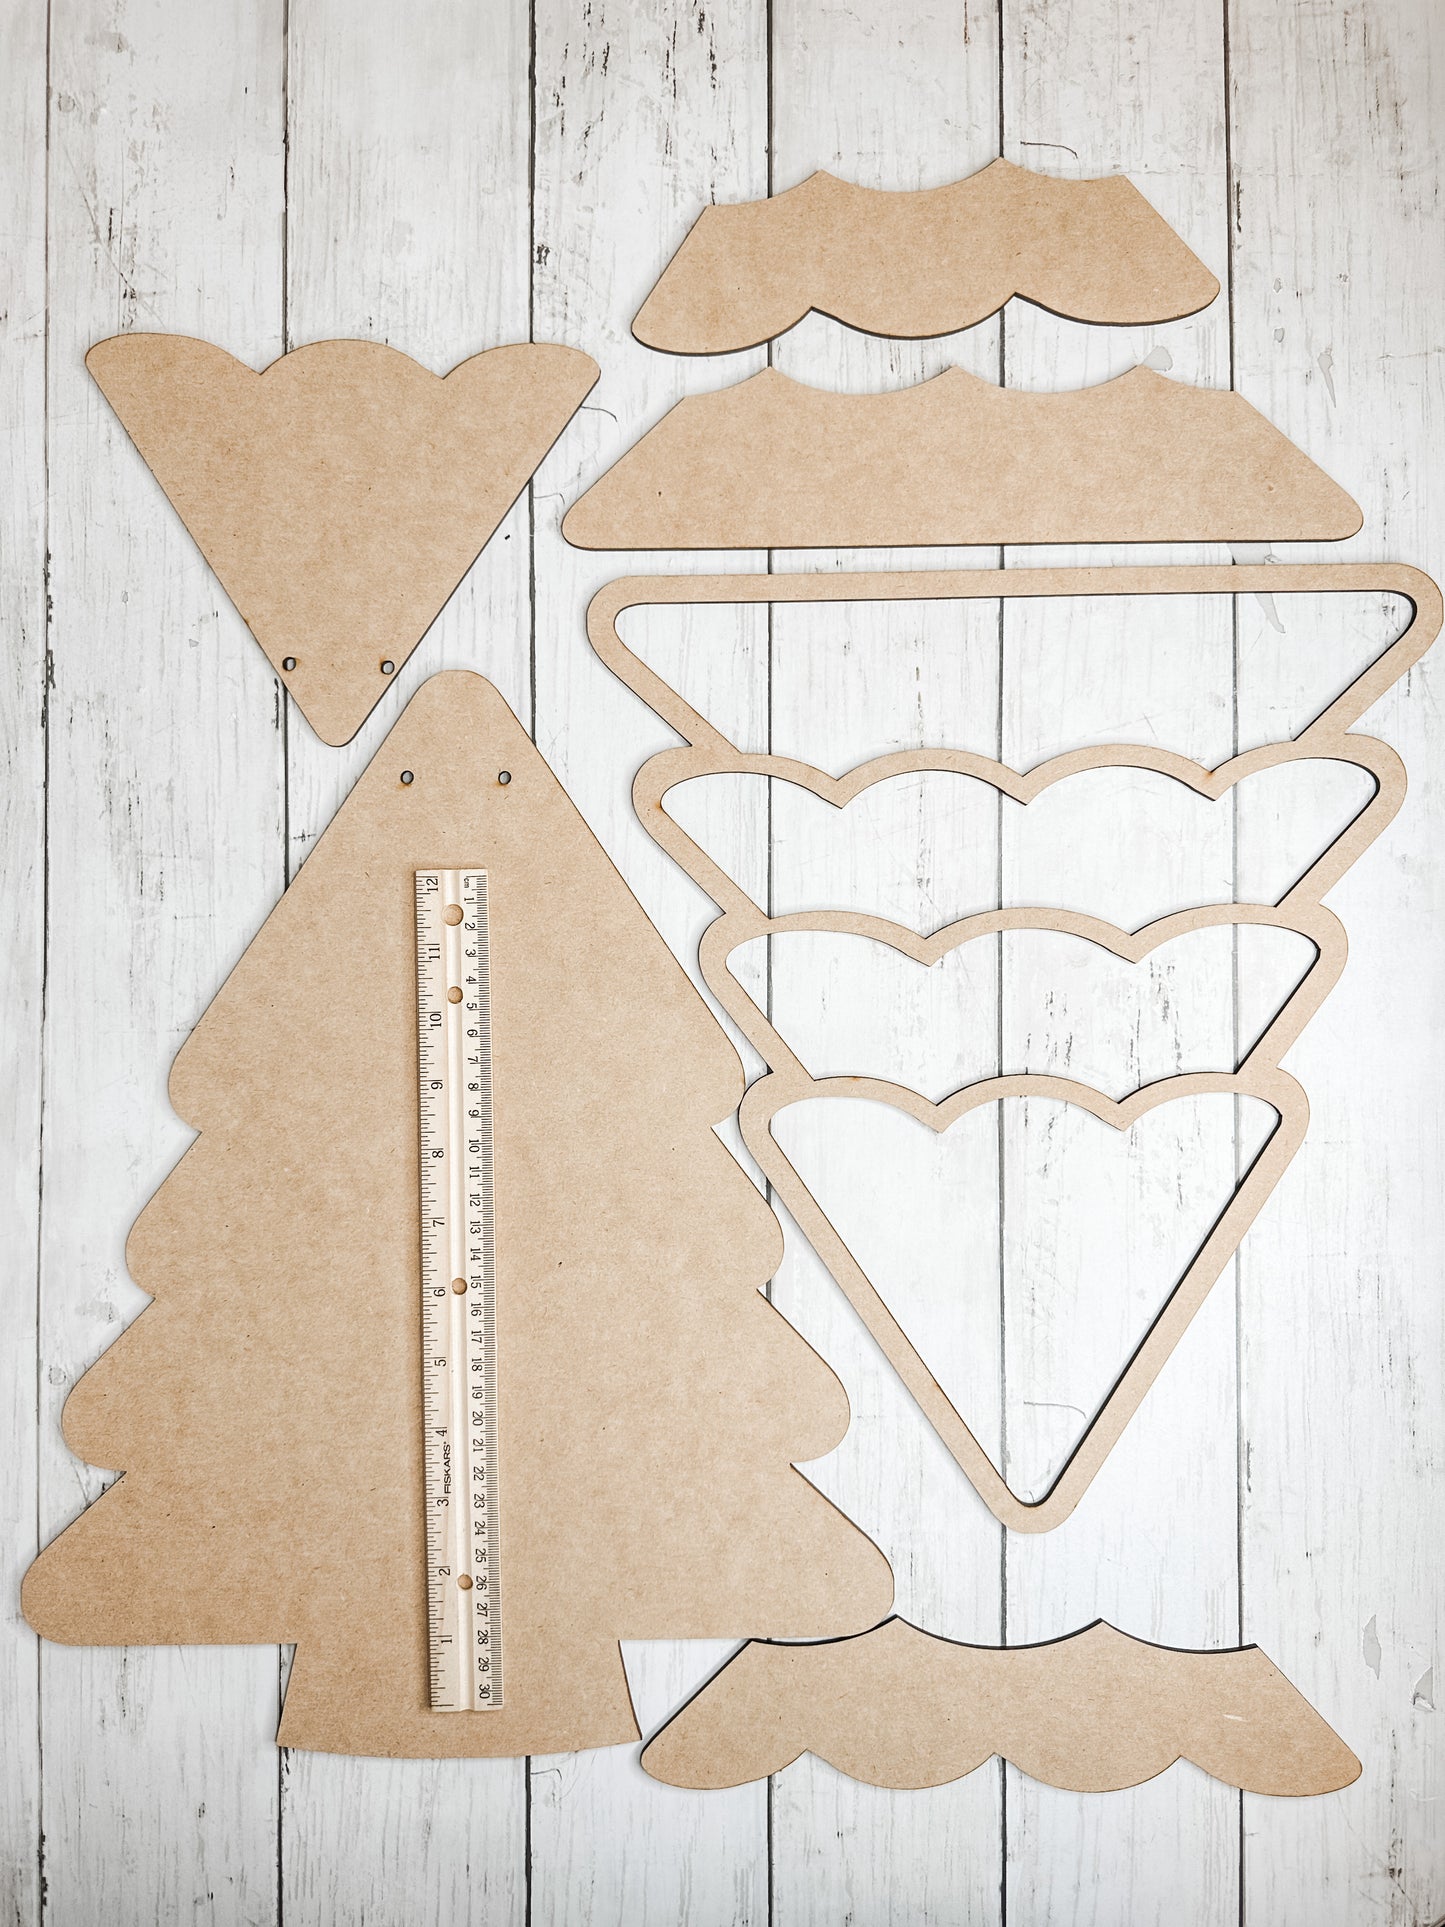 Christmas Winter Tree Door Hanger Sign DIY Kit